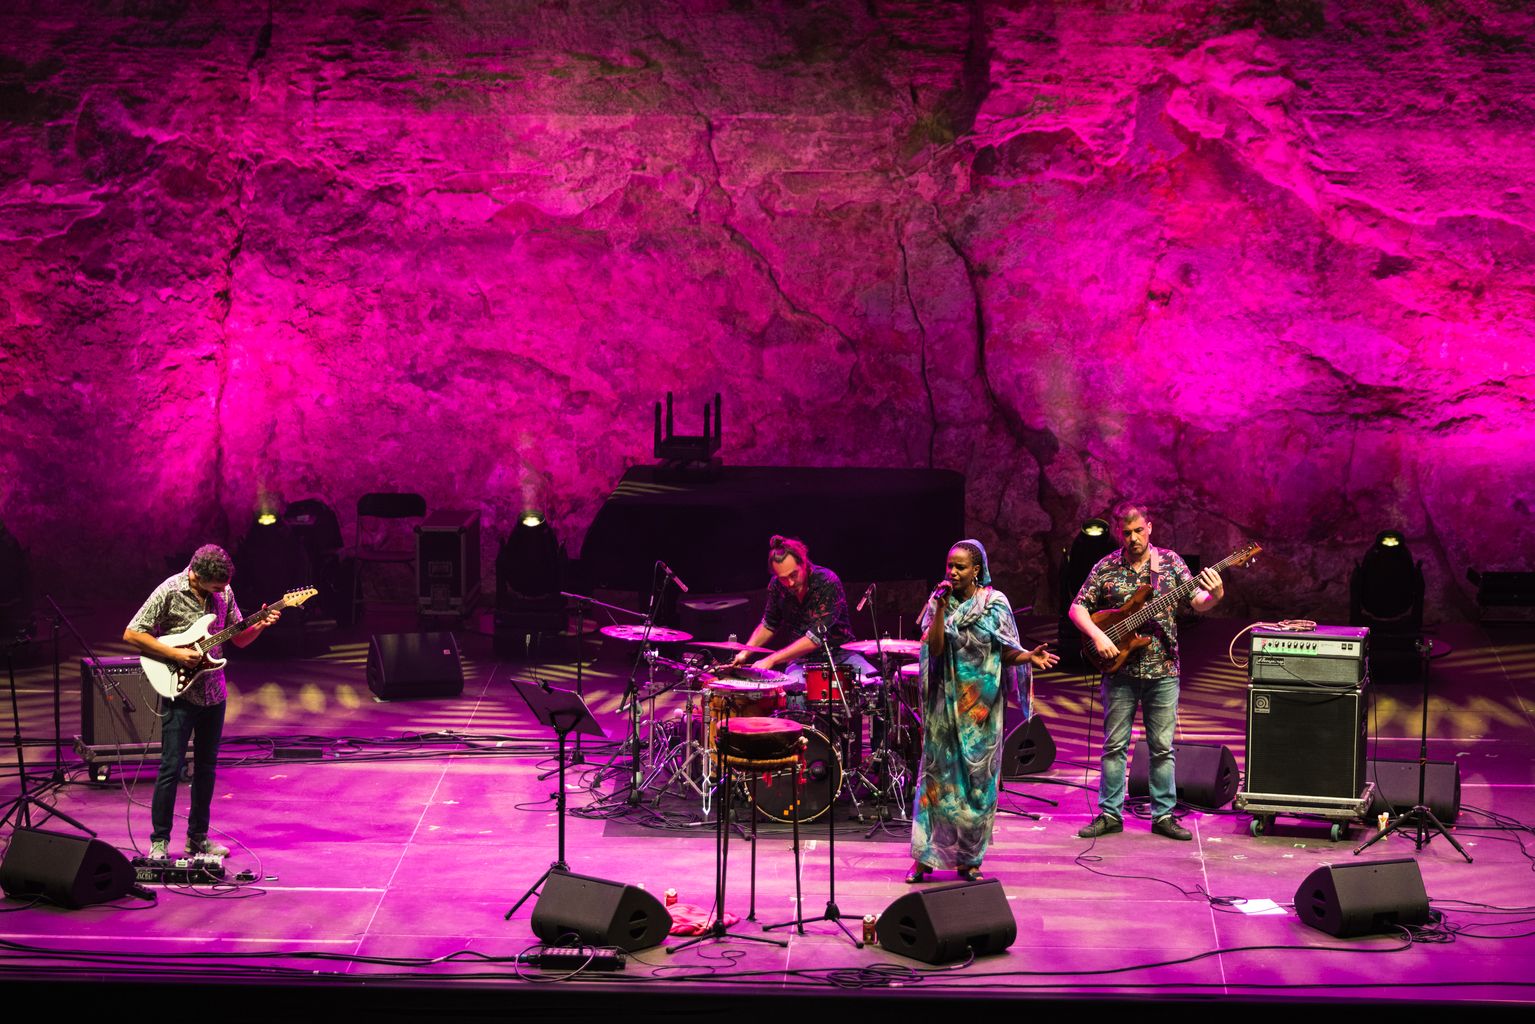 Actuació d'Azixa Brahim en el concert dins de "La Mercè és Música", acompanyada per un grup de músics a l'escenari del Teatre Grec